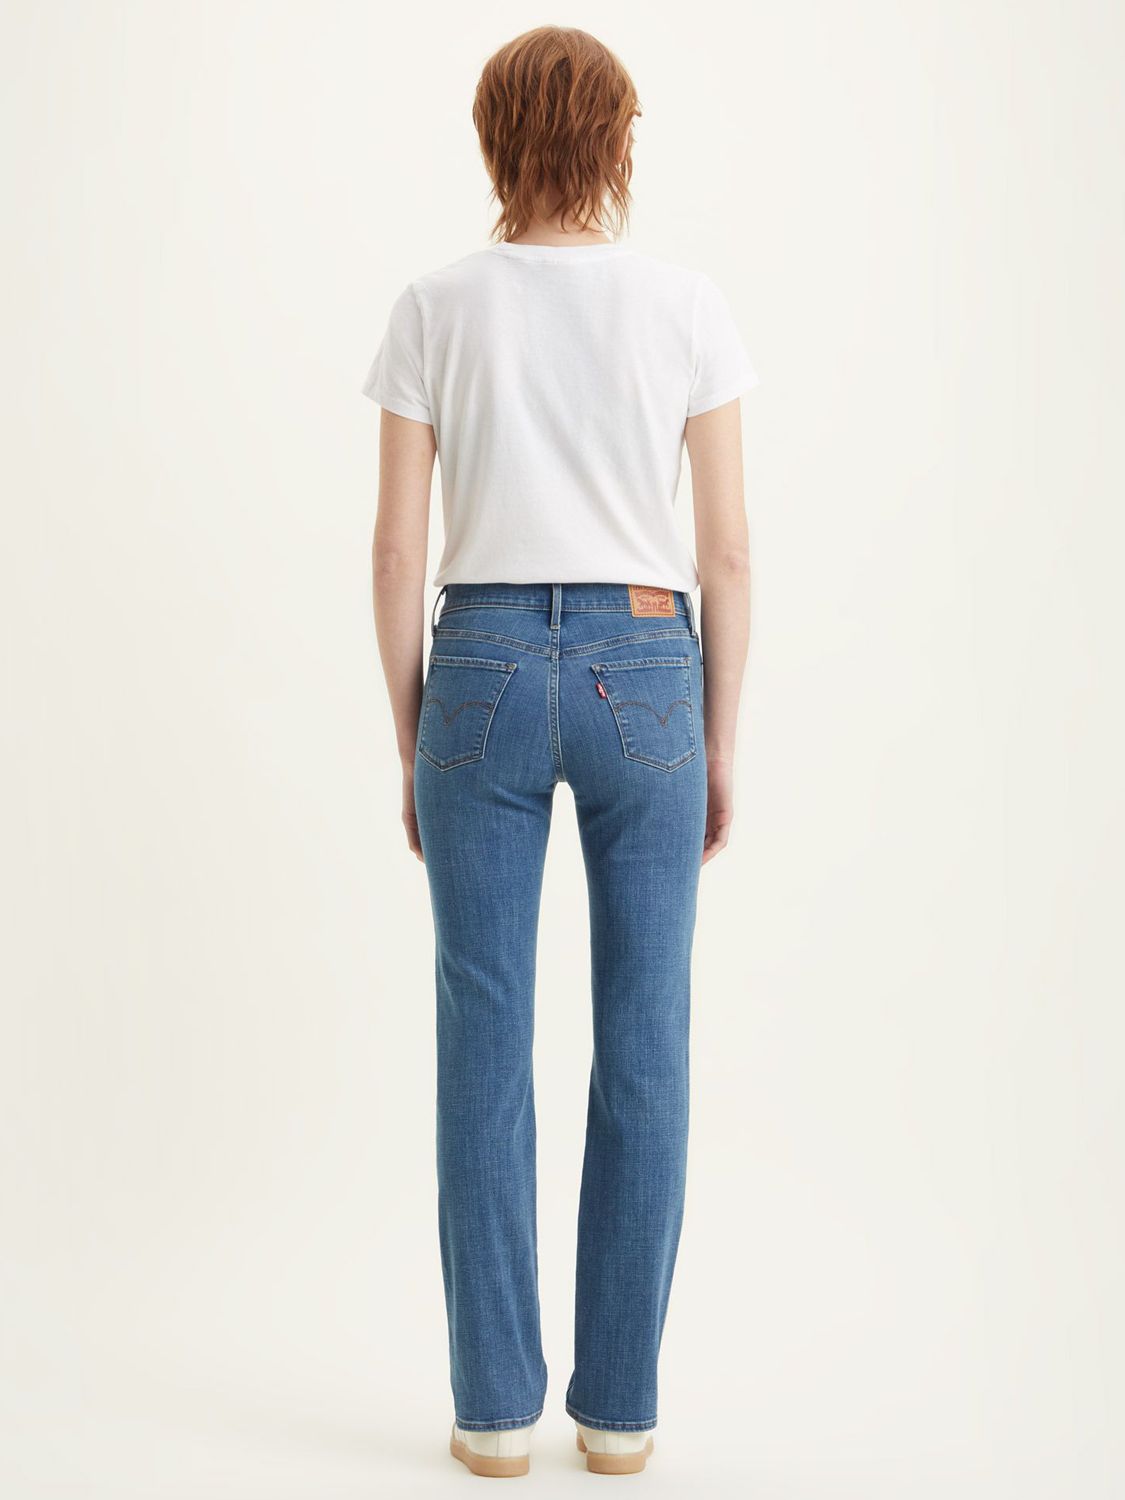 Levi's 314 Straight Cut Jeans, Lapis Bare, W30/L32